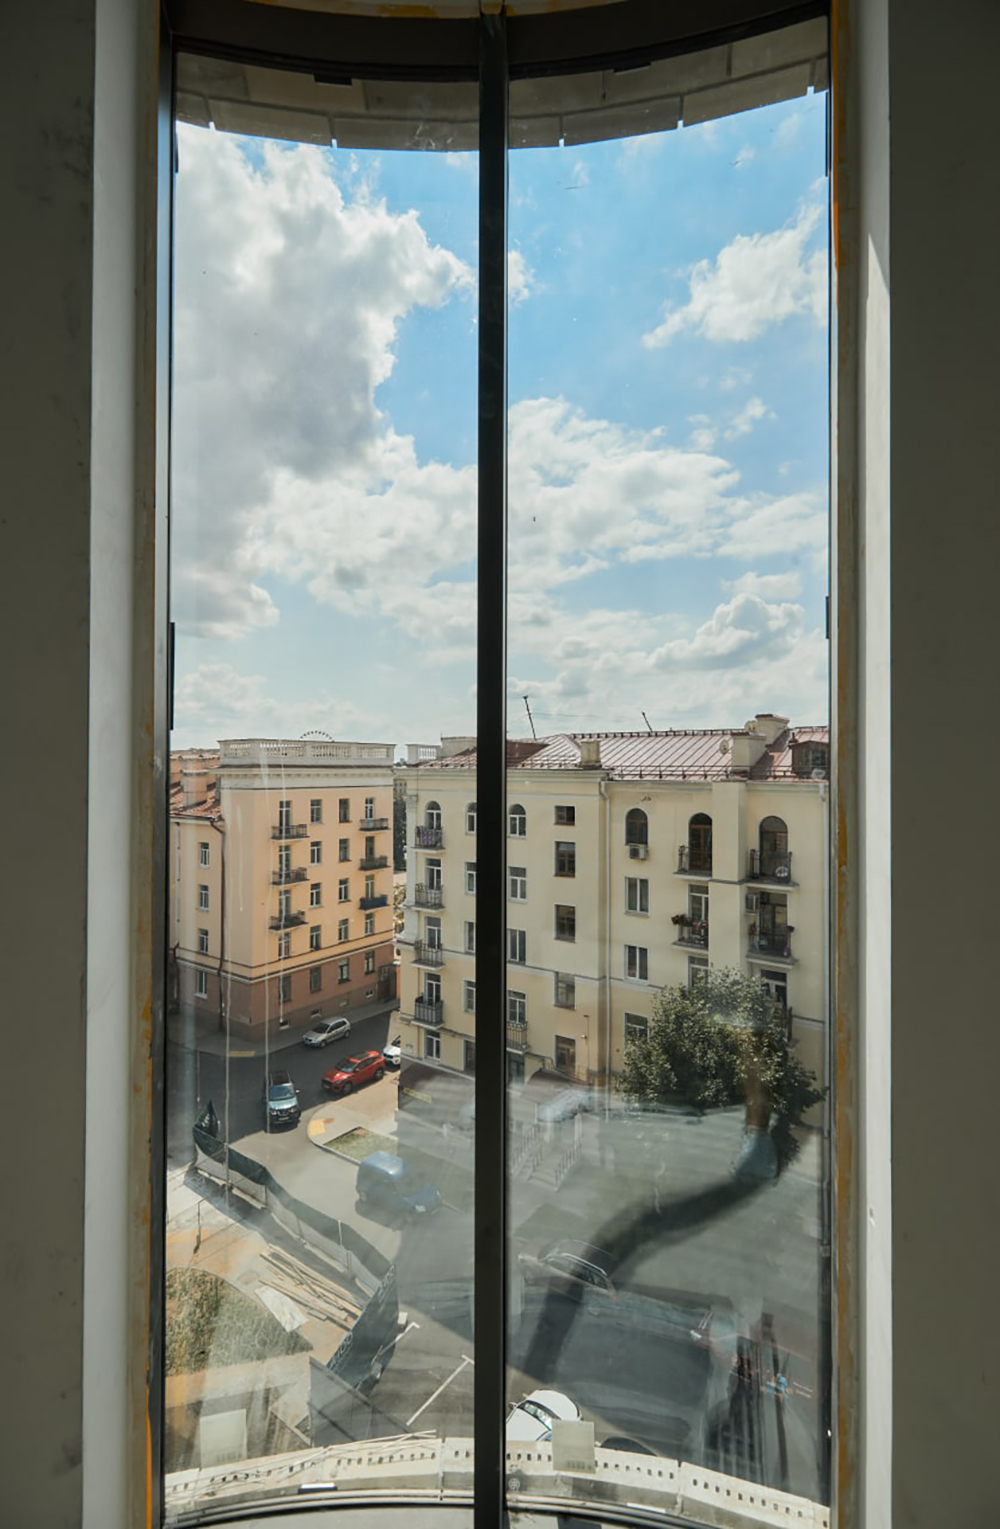 Остекление заслуживает отдельного внимания: оно витражное и радиальное (т. е. скругленные окна) от бренда Schuco. Такое решение – редкость для современной белорусской архитектуры.